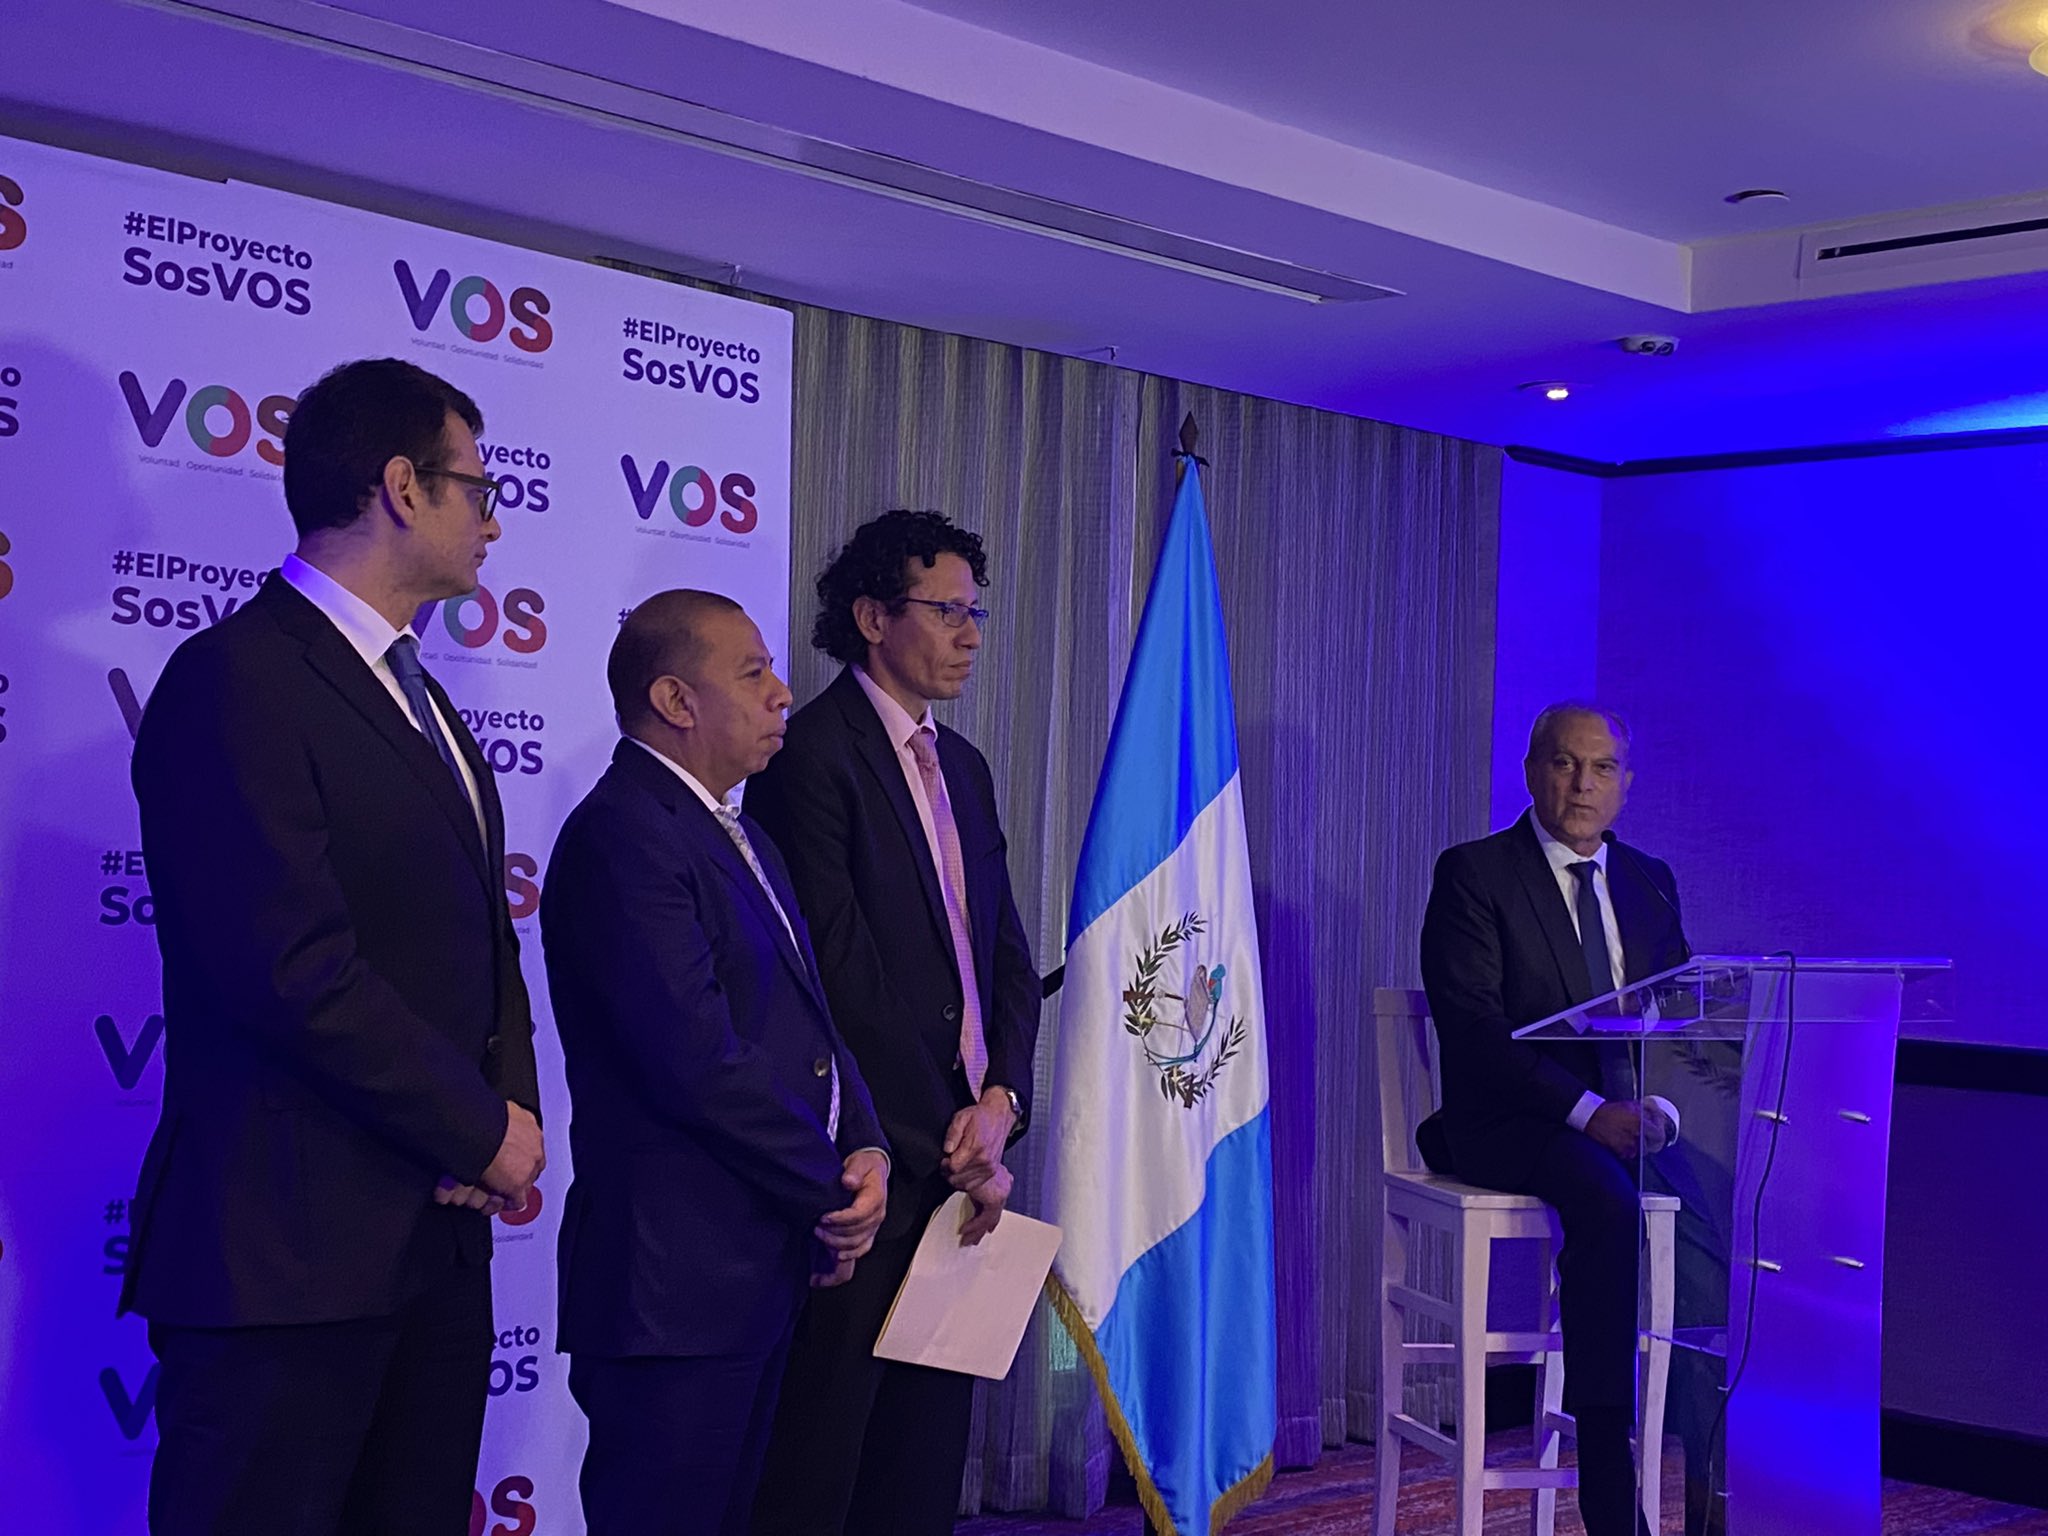 El partido VOS y la plataforma Guatemala Va formaron una alianza y presentaron a Manuel Villacorta -sentado- como coordinador de plan de gobierno. (Foto Prensa Libre: Tomada de @GPOposicion)